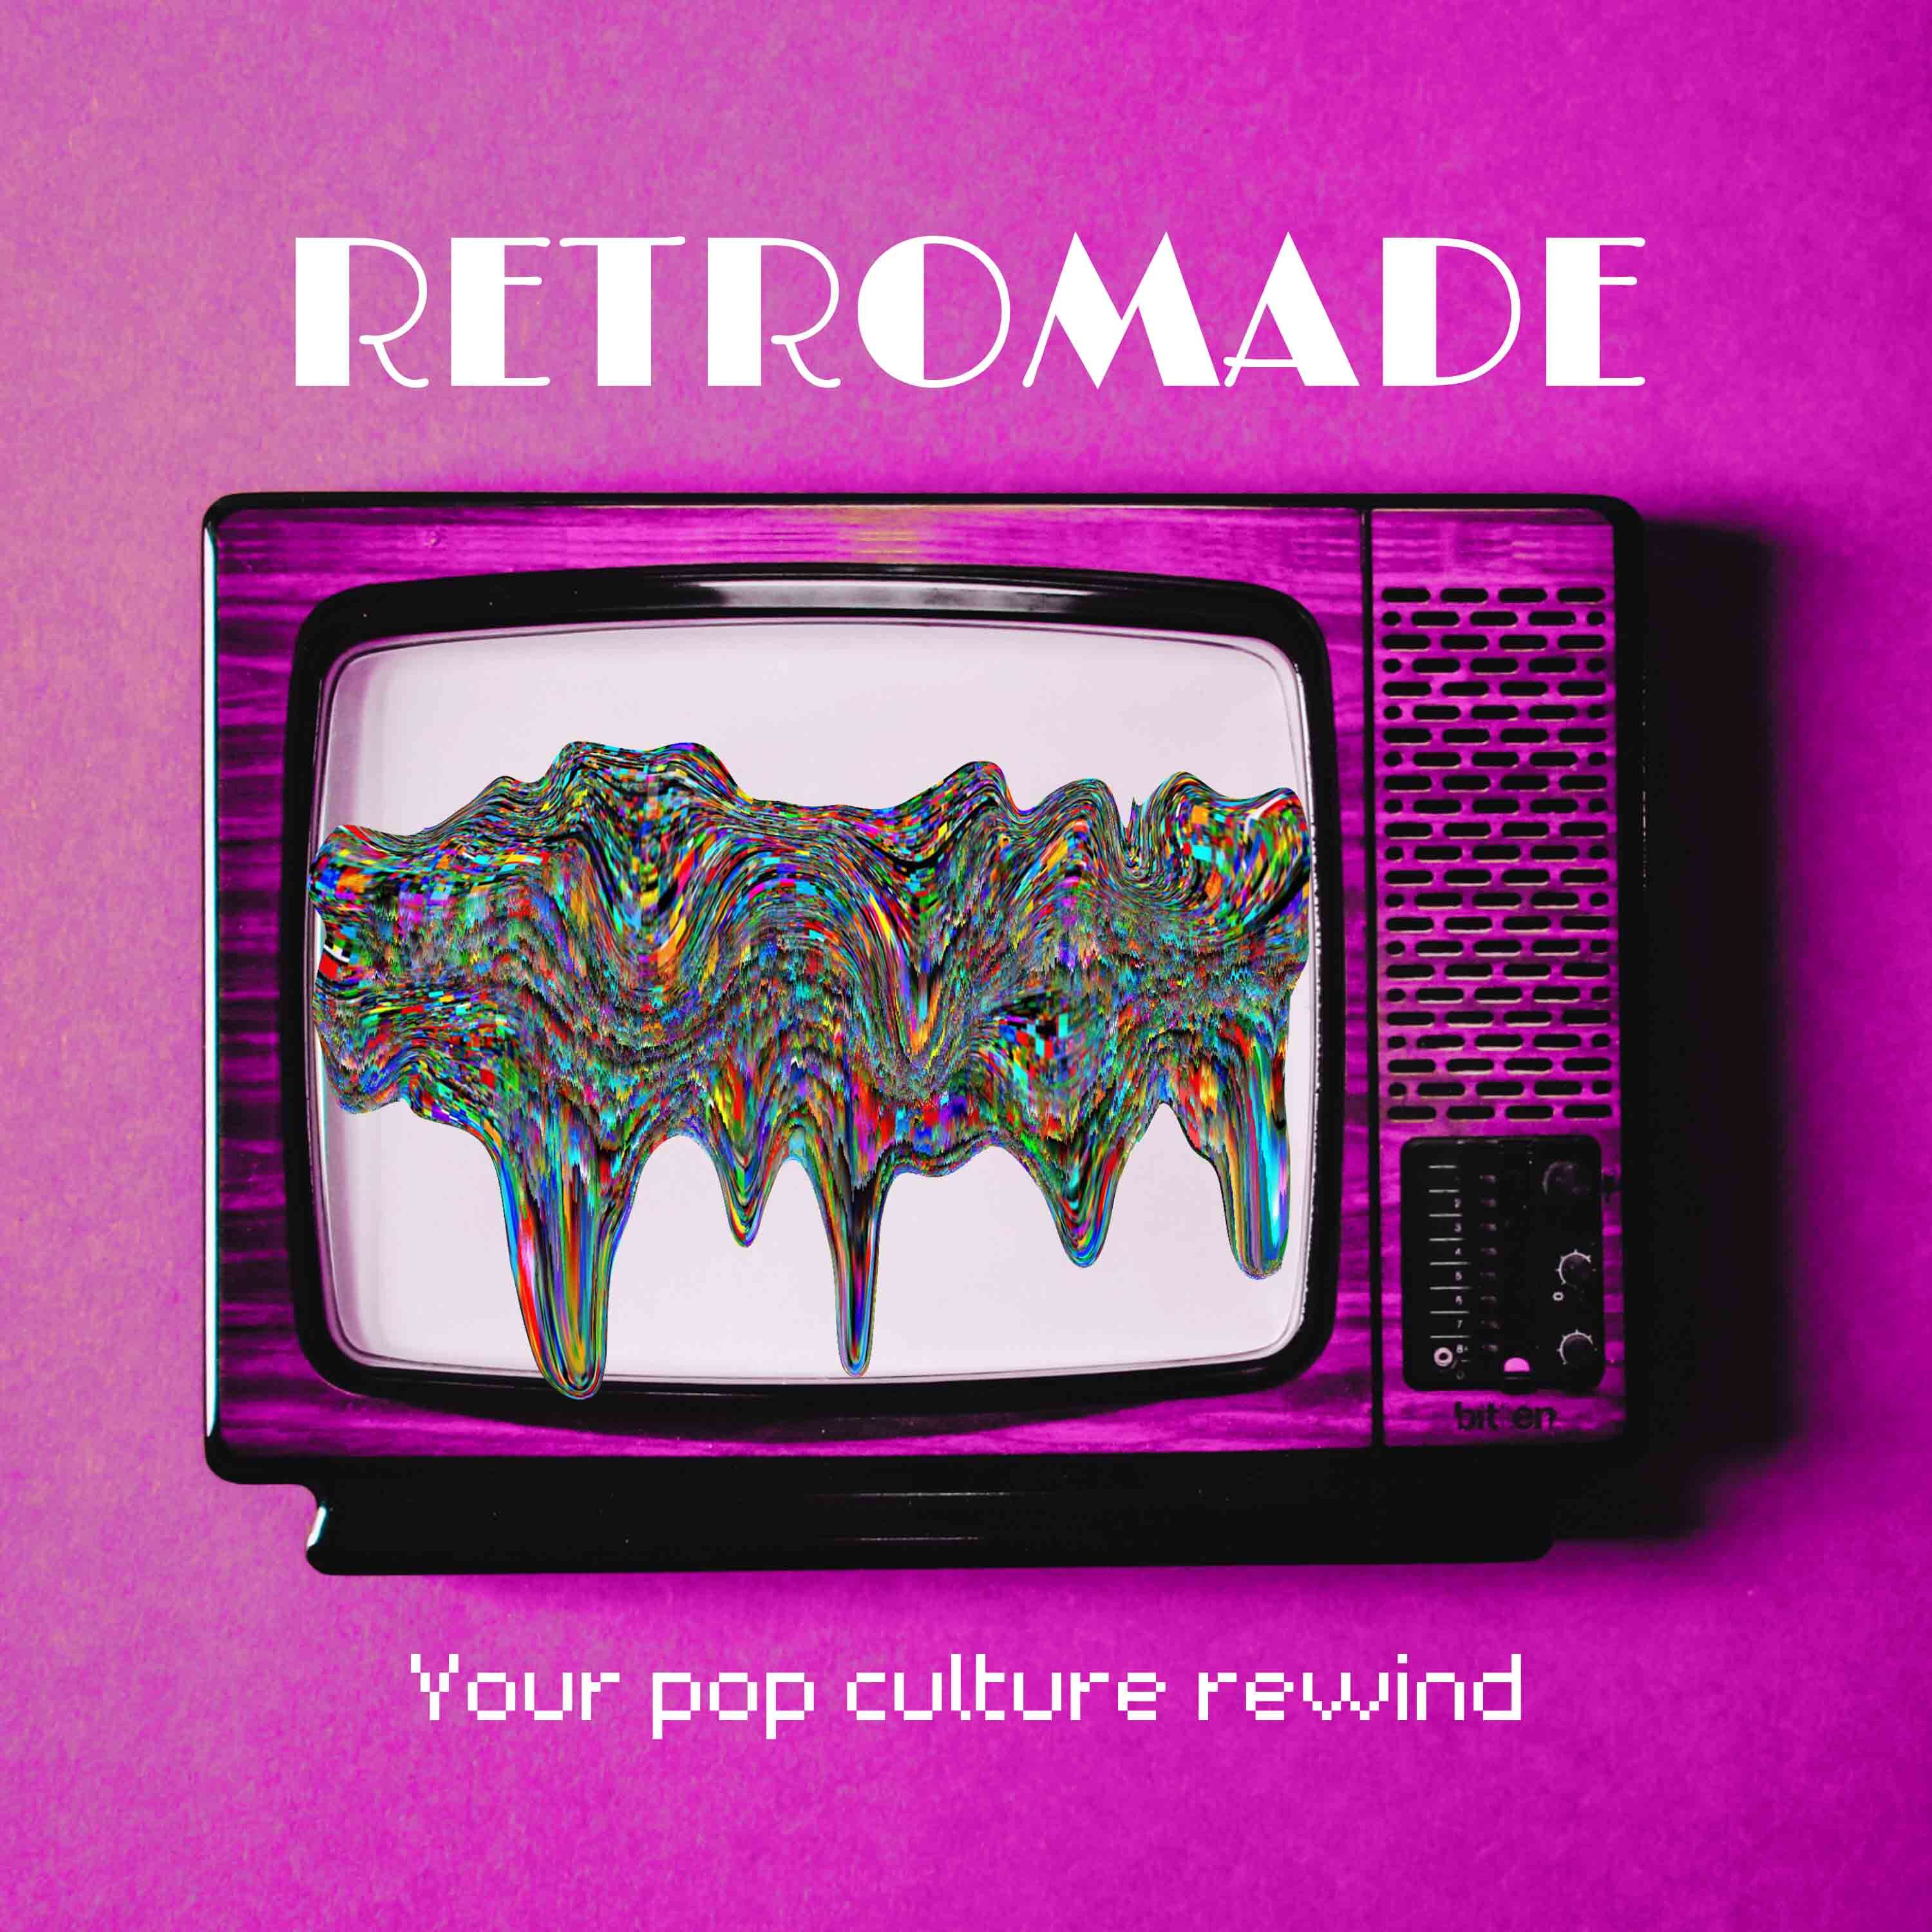 Retromade - Your pop culture rewind.